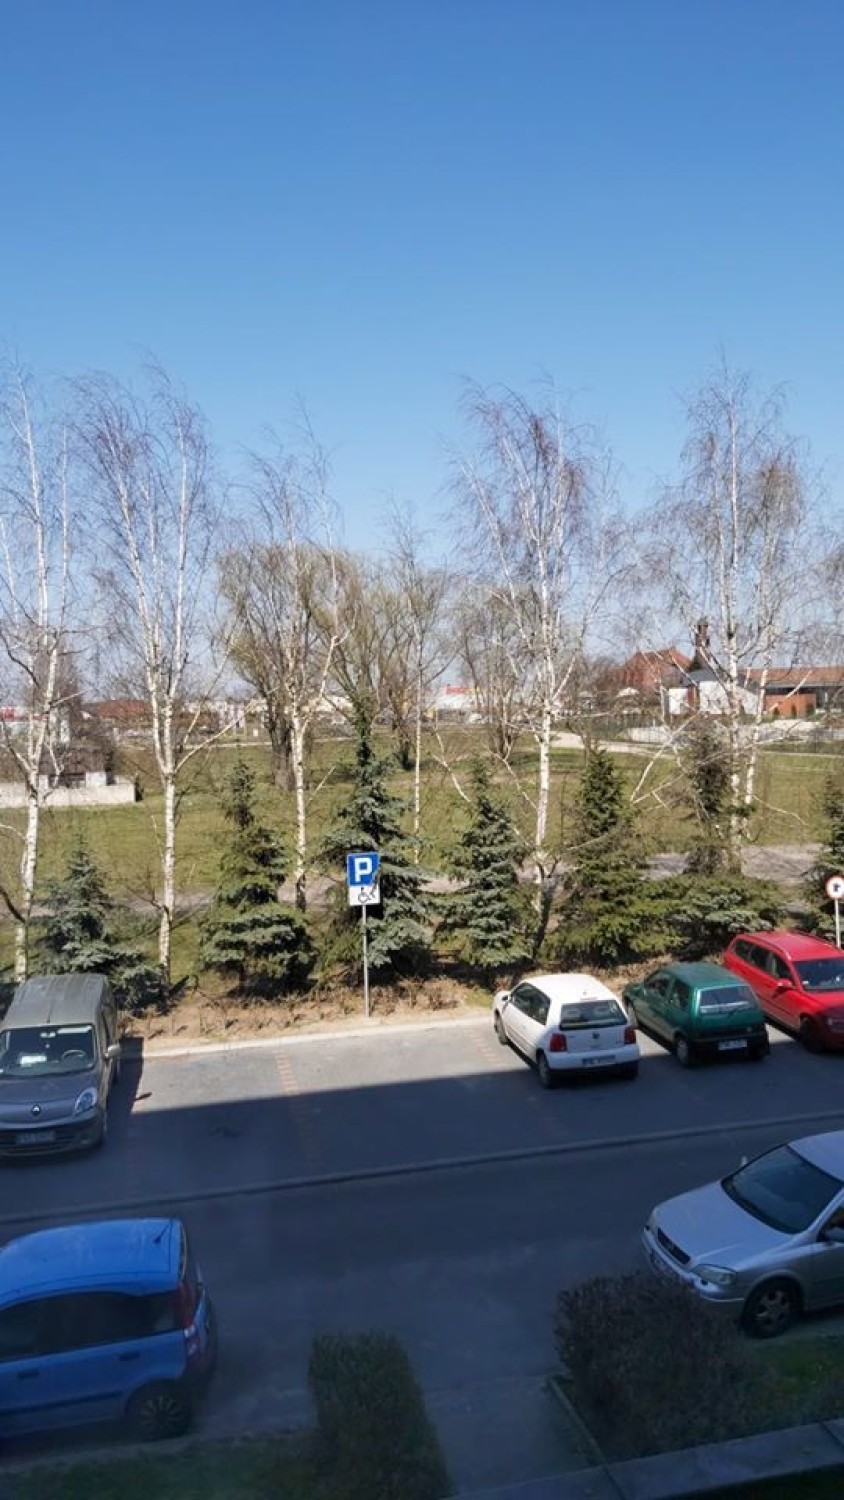 Wasz widok zza okna: zdjęcia mieszkańców powiatu wolsztyńskiego i okolic